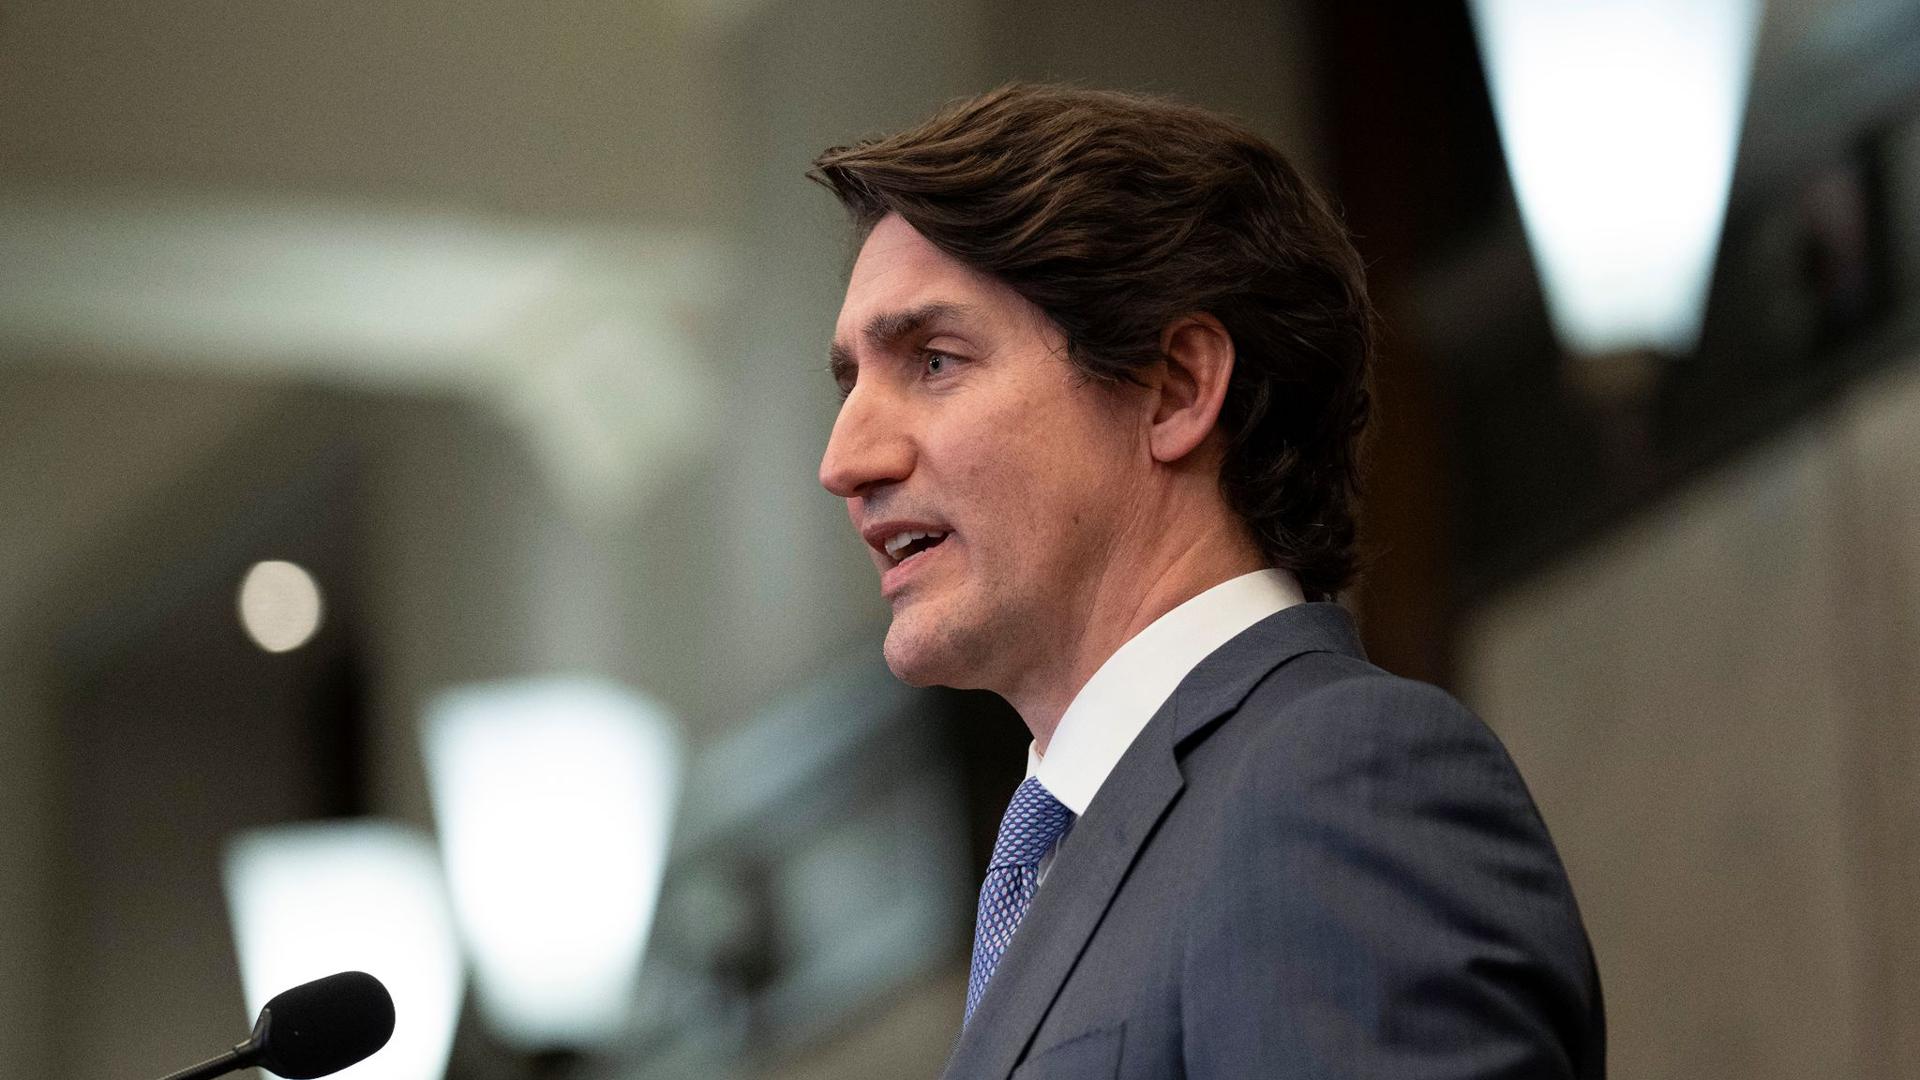 Der kanadische Premierminister Justin Trudeau spricht nach einer Kabinettsklausur.